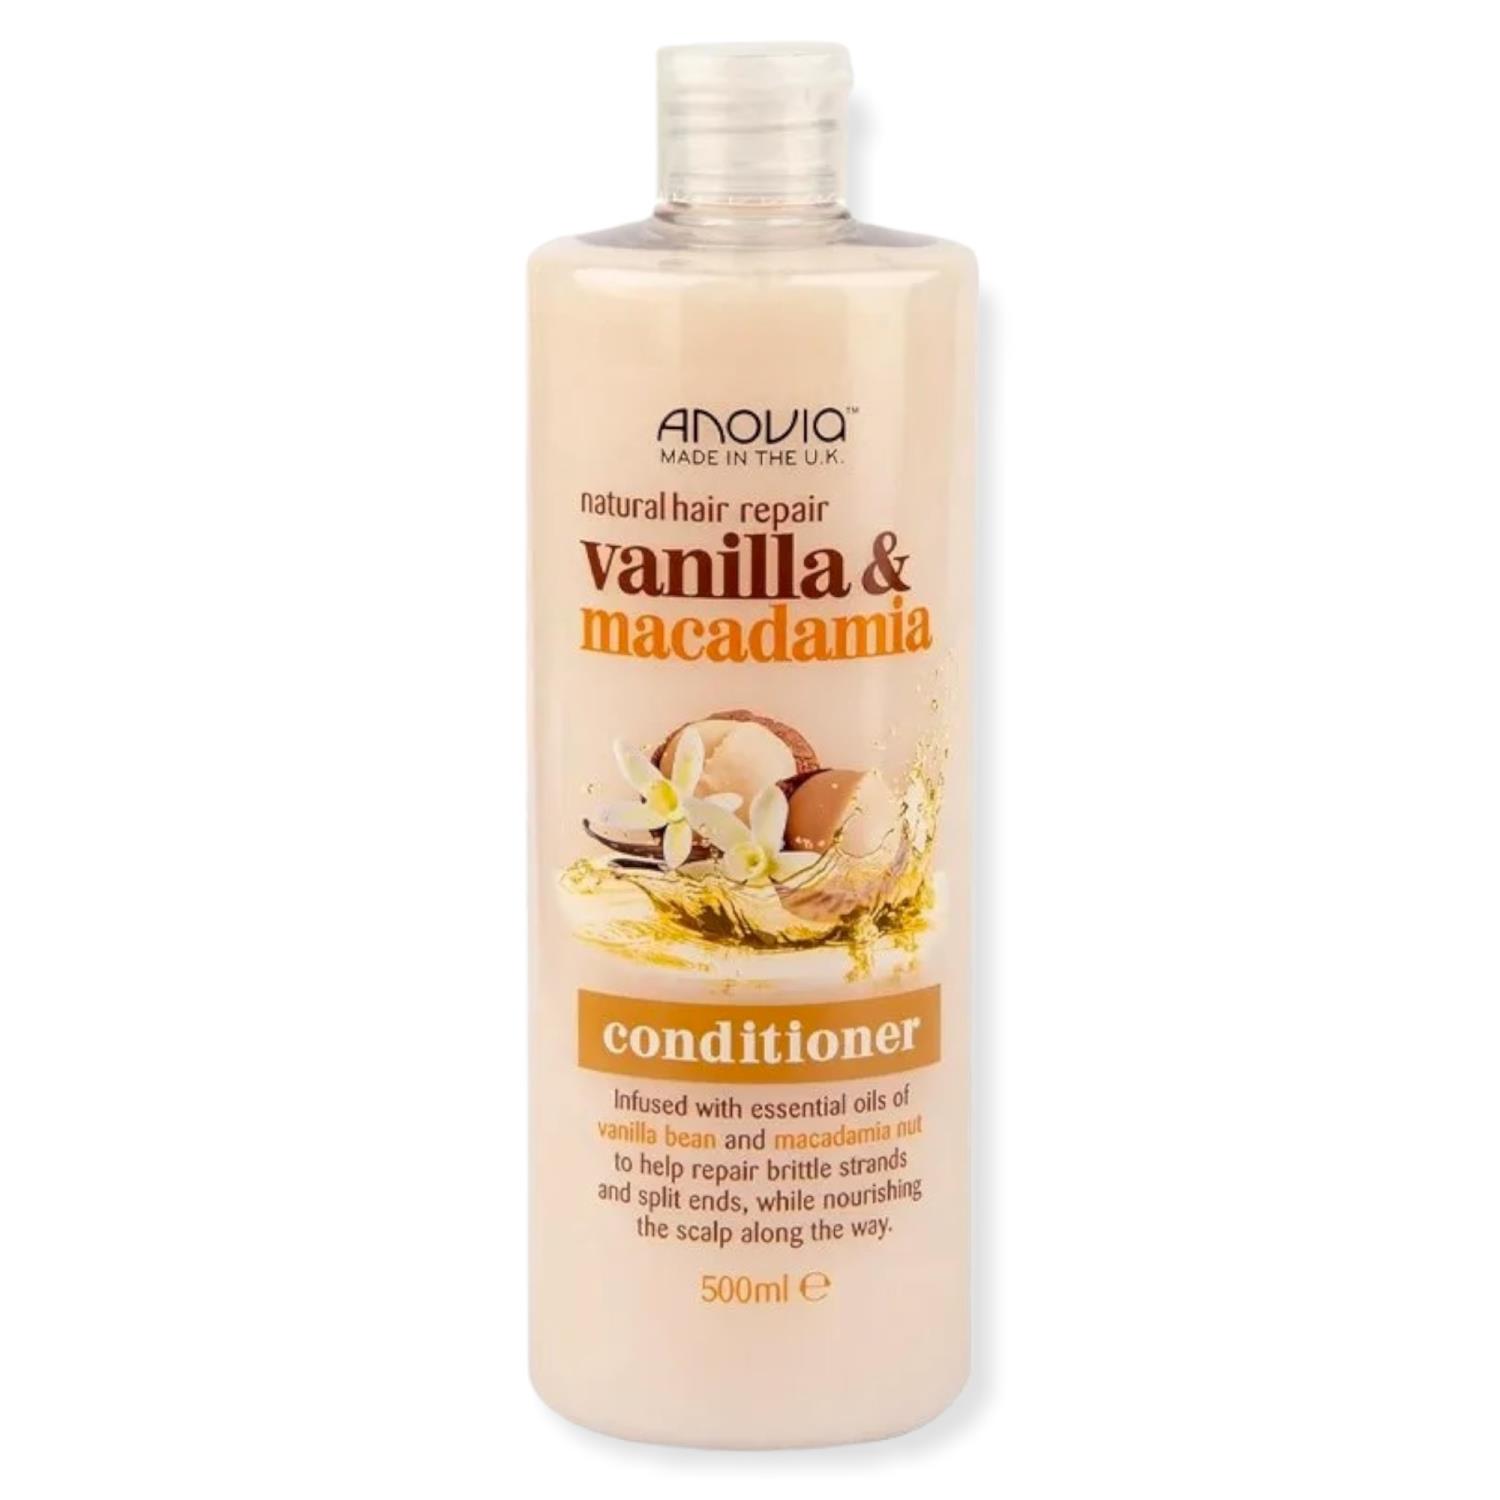 Anovia Vanilla&Macademia Conditioner 500ml